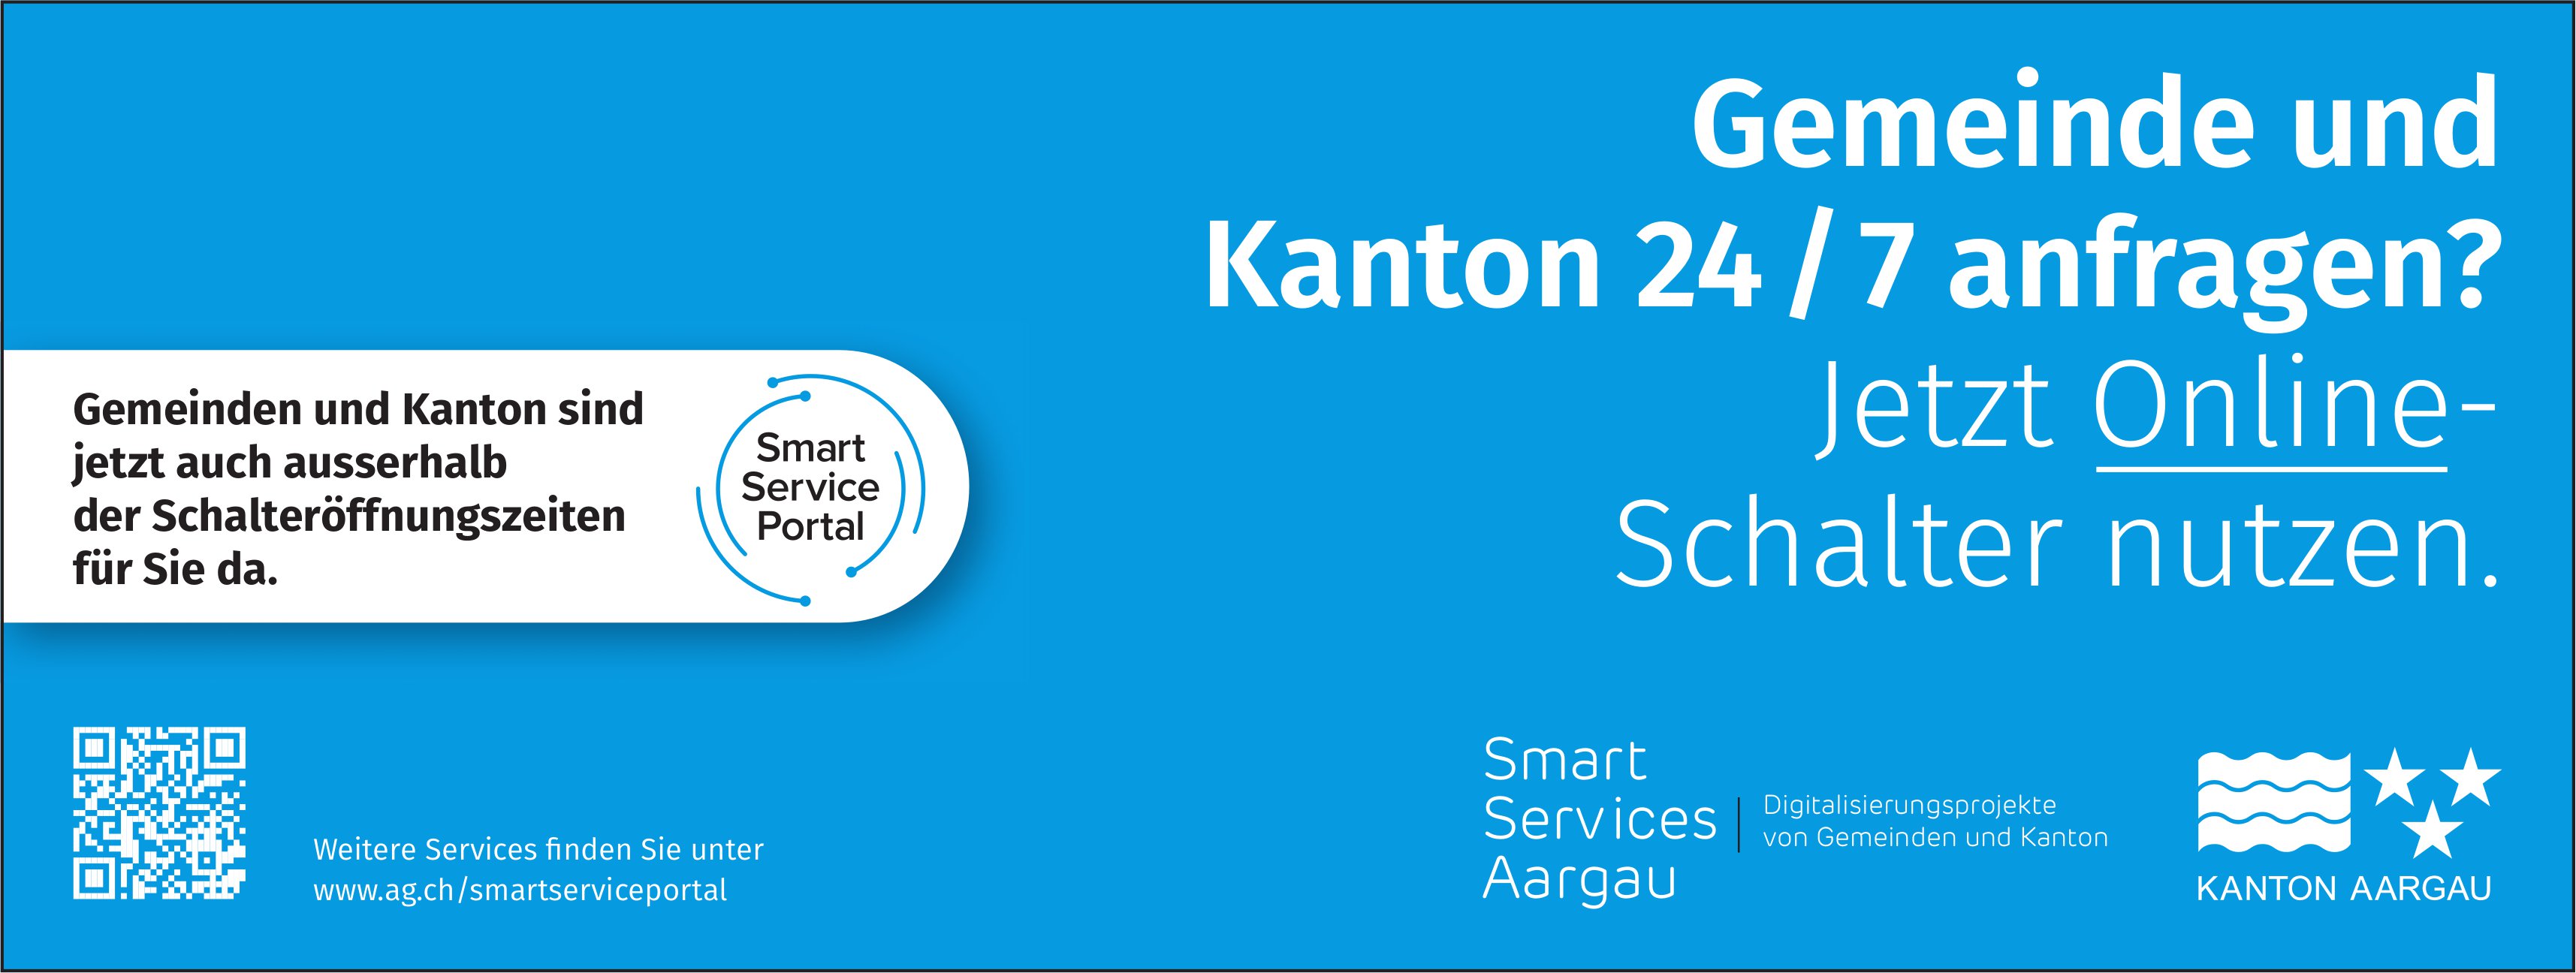 Online-Schalter, Smart Services, Aargau - Gemeinde und Kanton 24 / 7 anfragen?